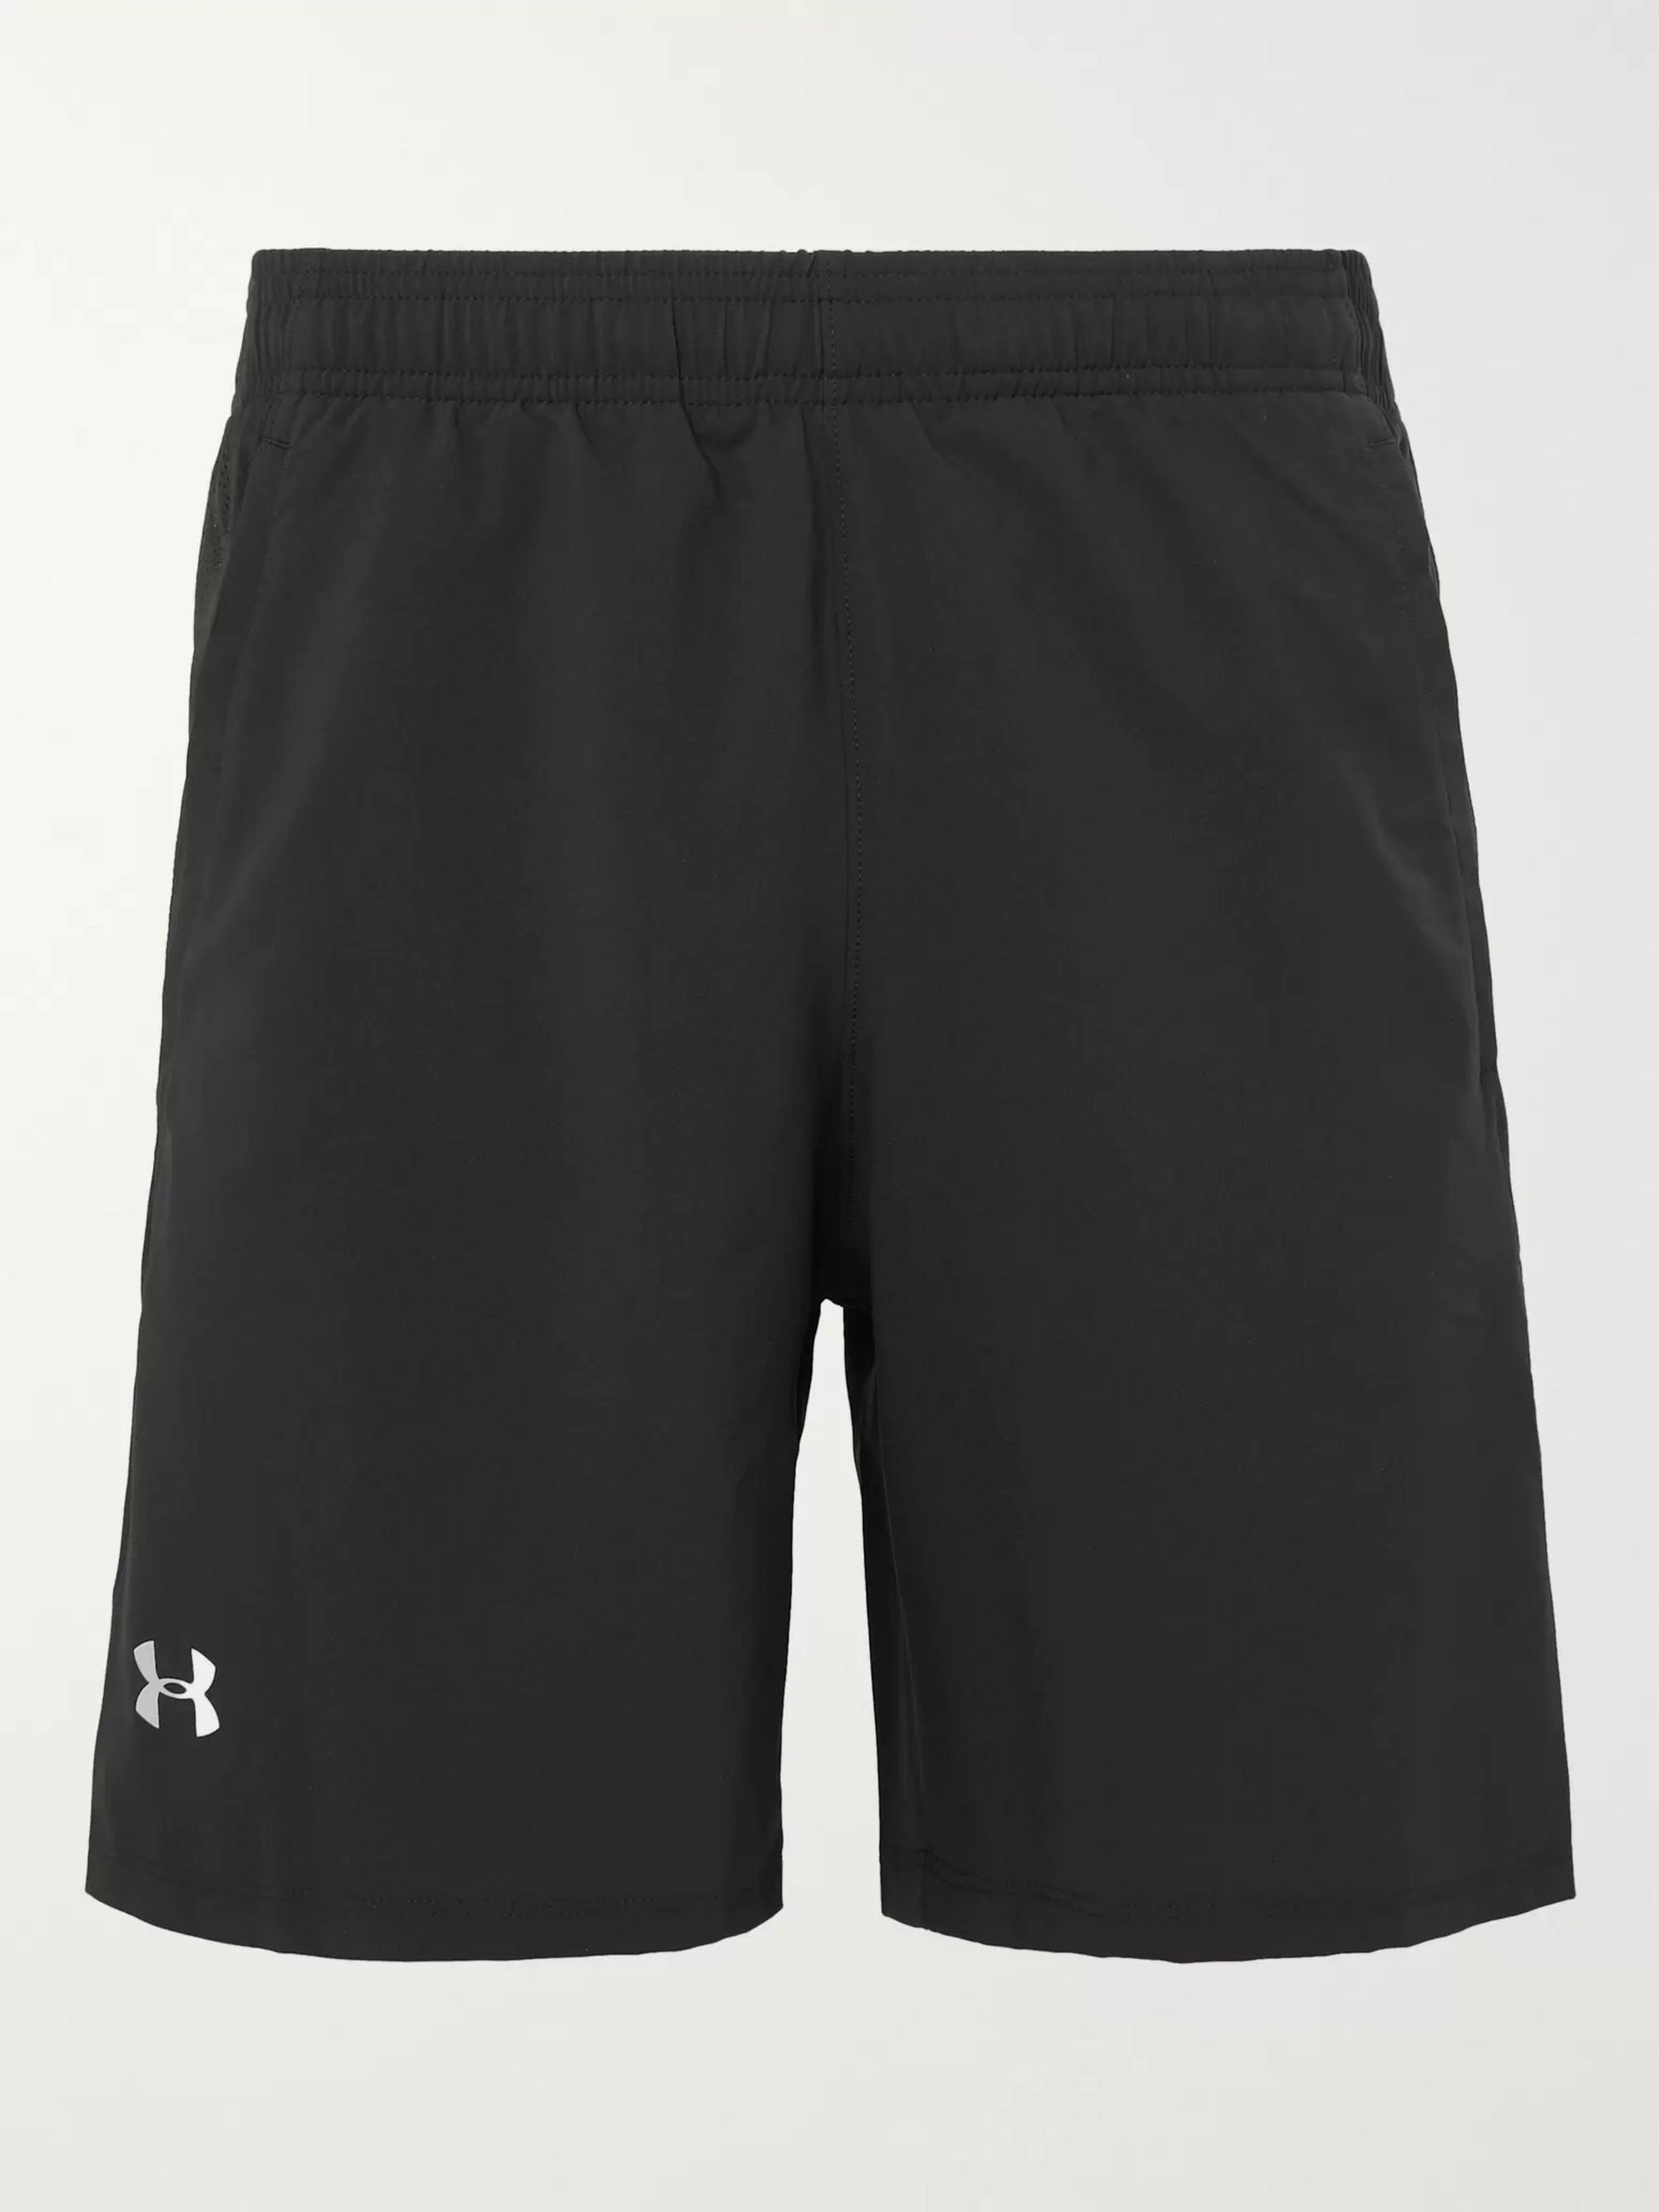 heatgear shorts